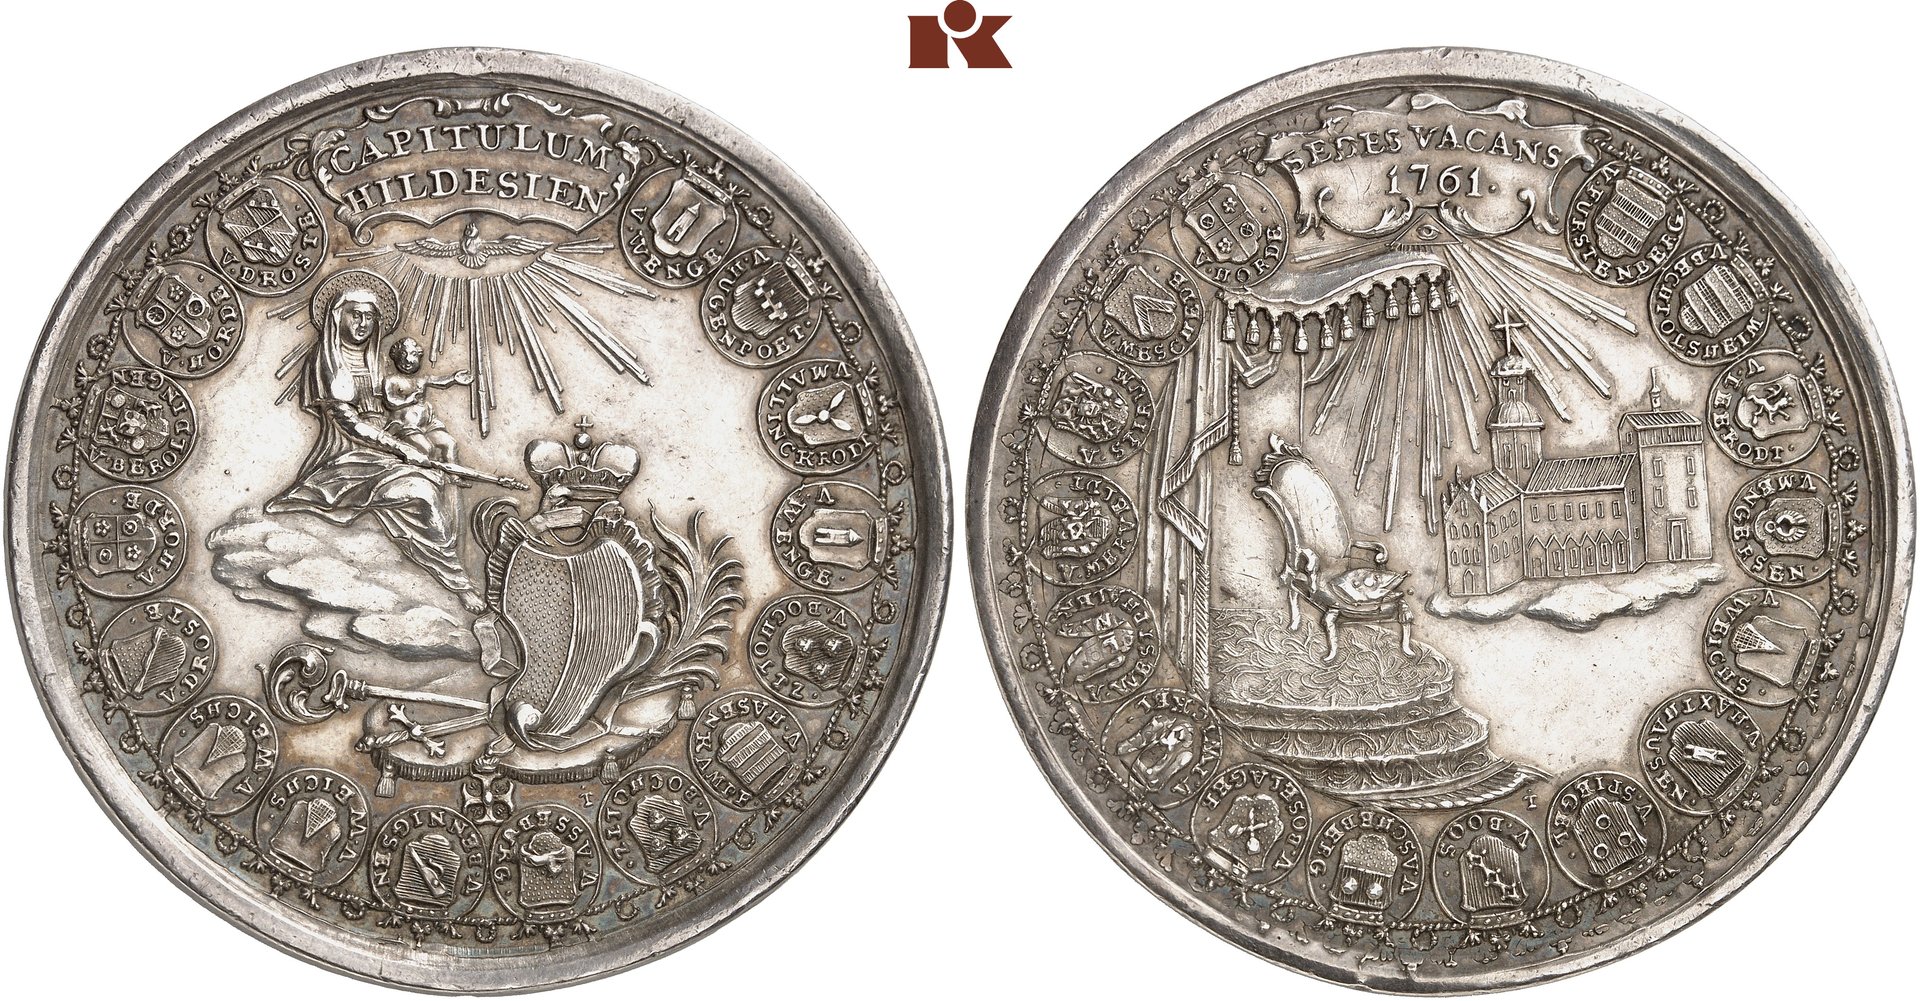 Hildesheim, 1761 Sede Vacante medal.jpg